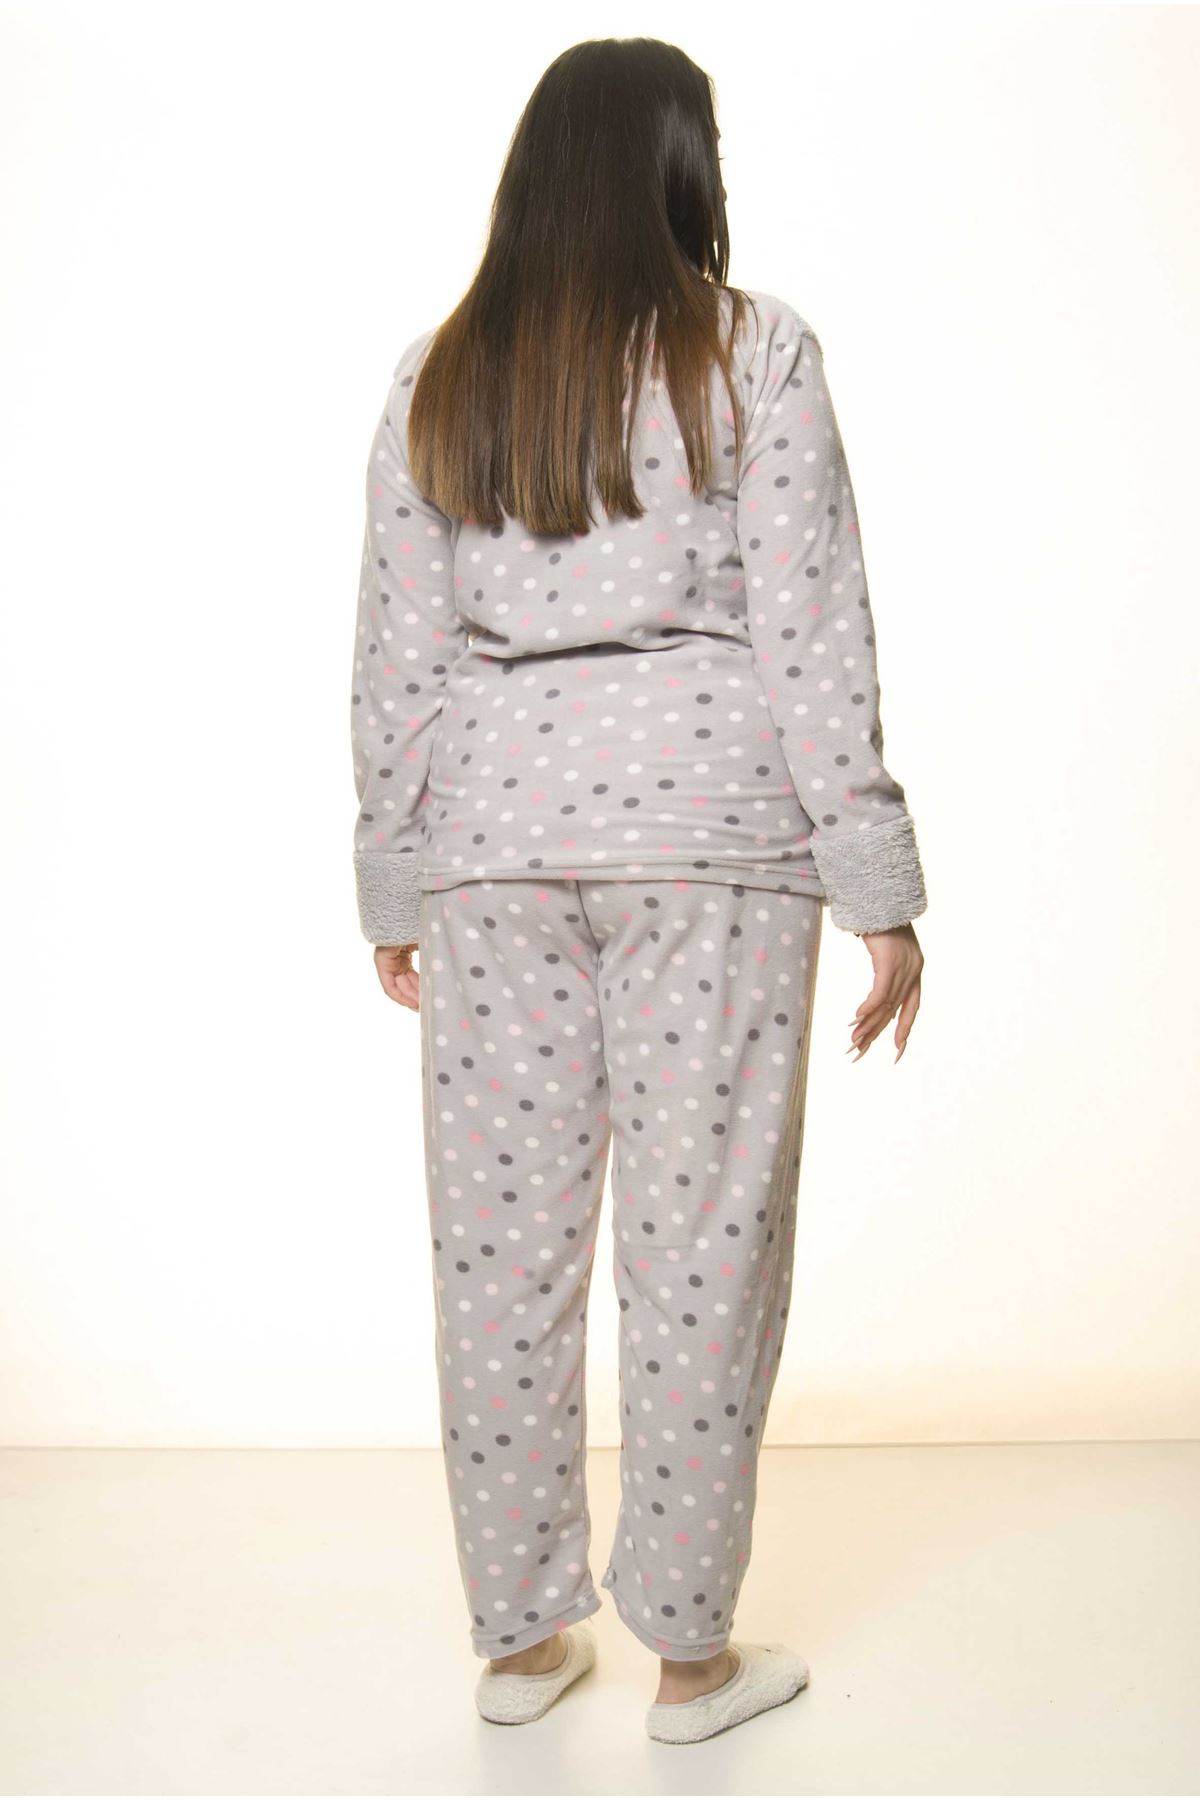 Polar Peluş Kışlık Pijama Takımı 32C-1524